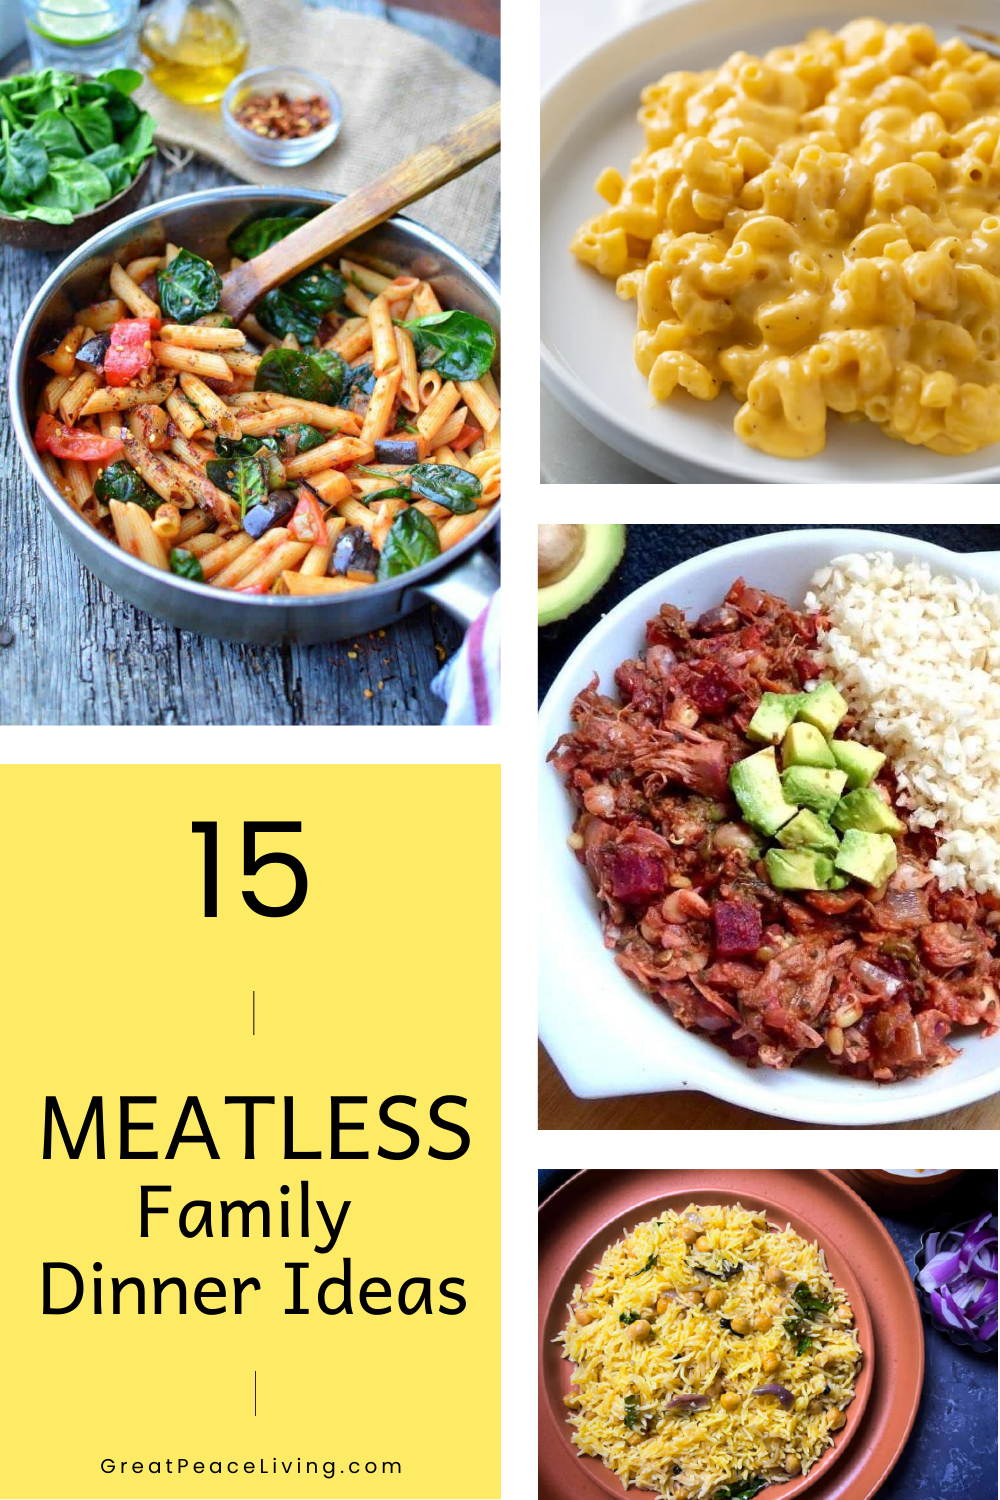 Meatless Family Dinner Ideas